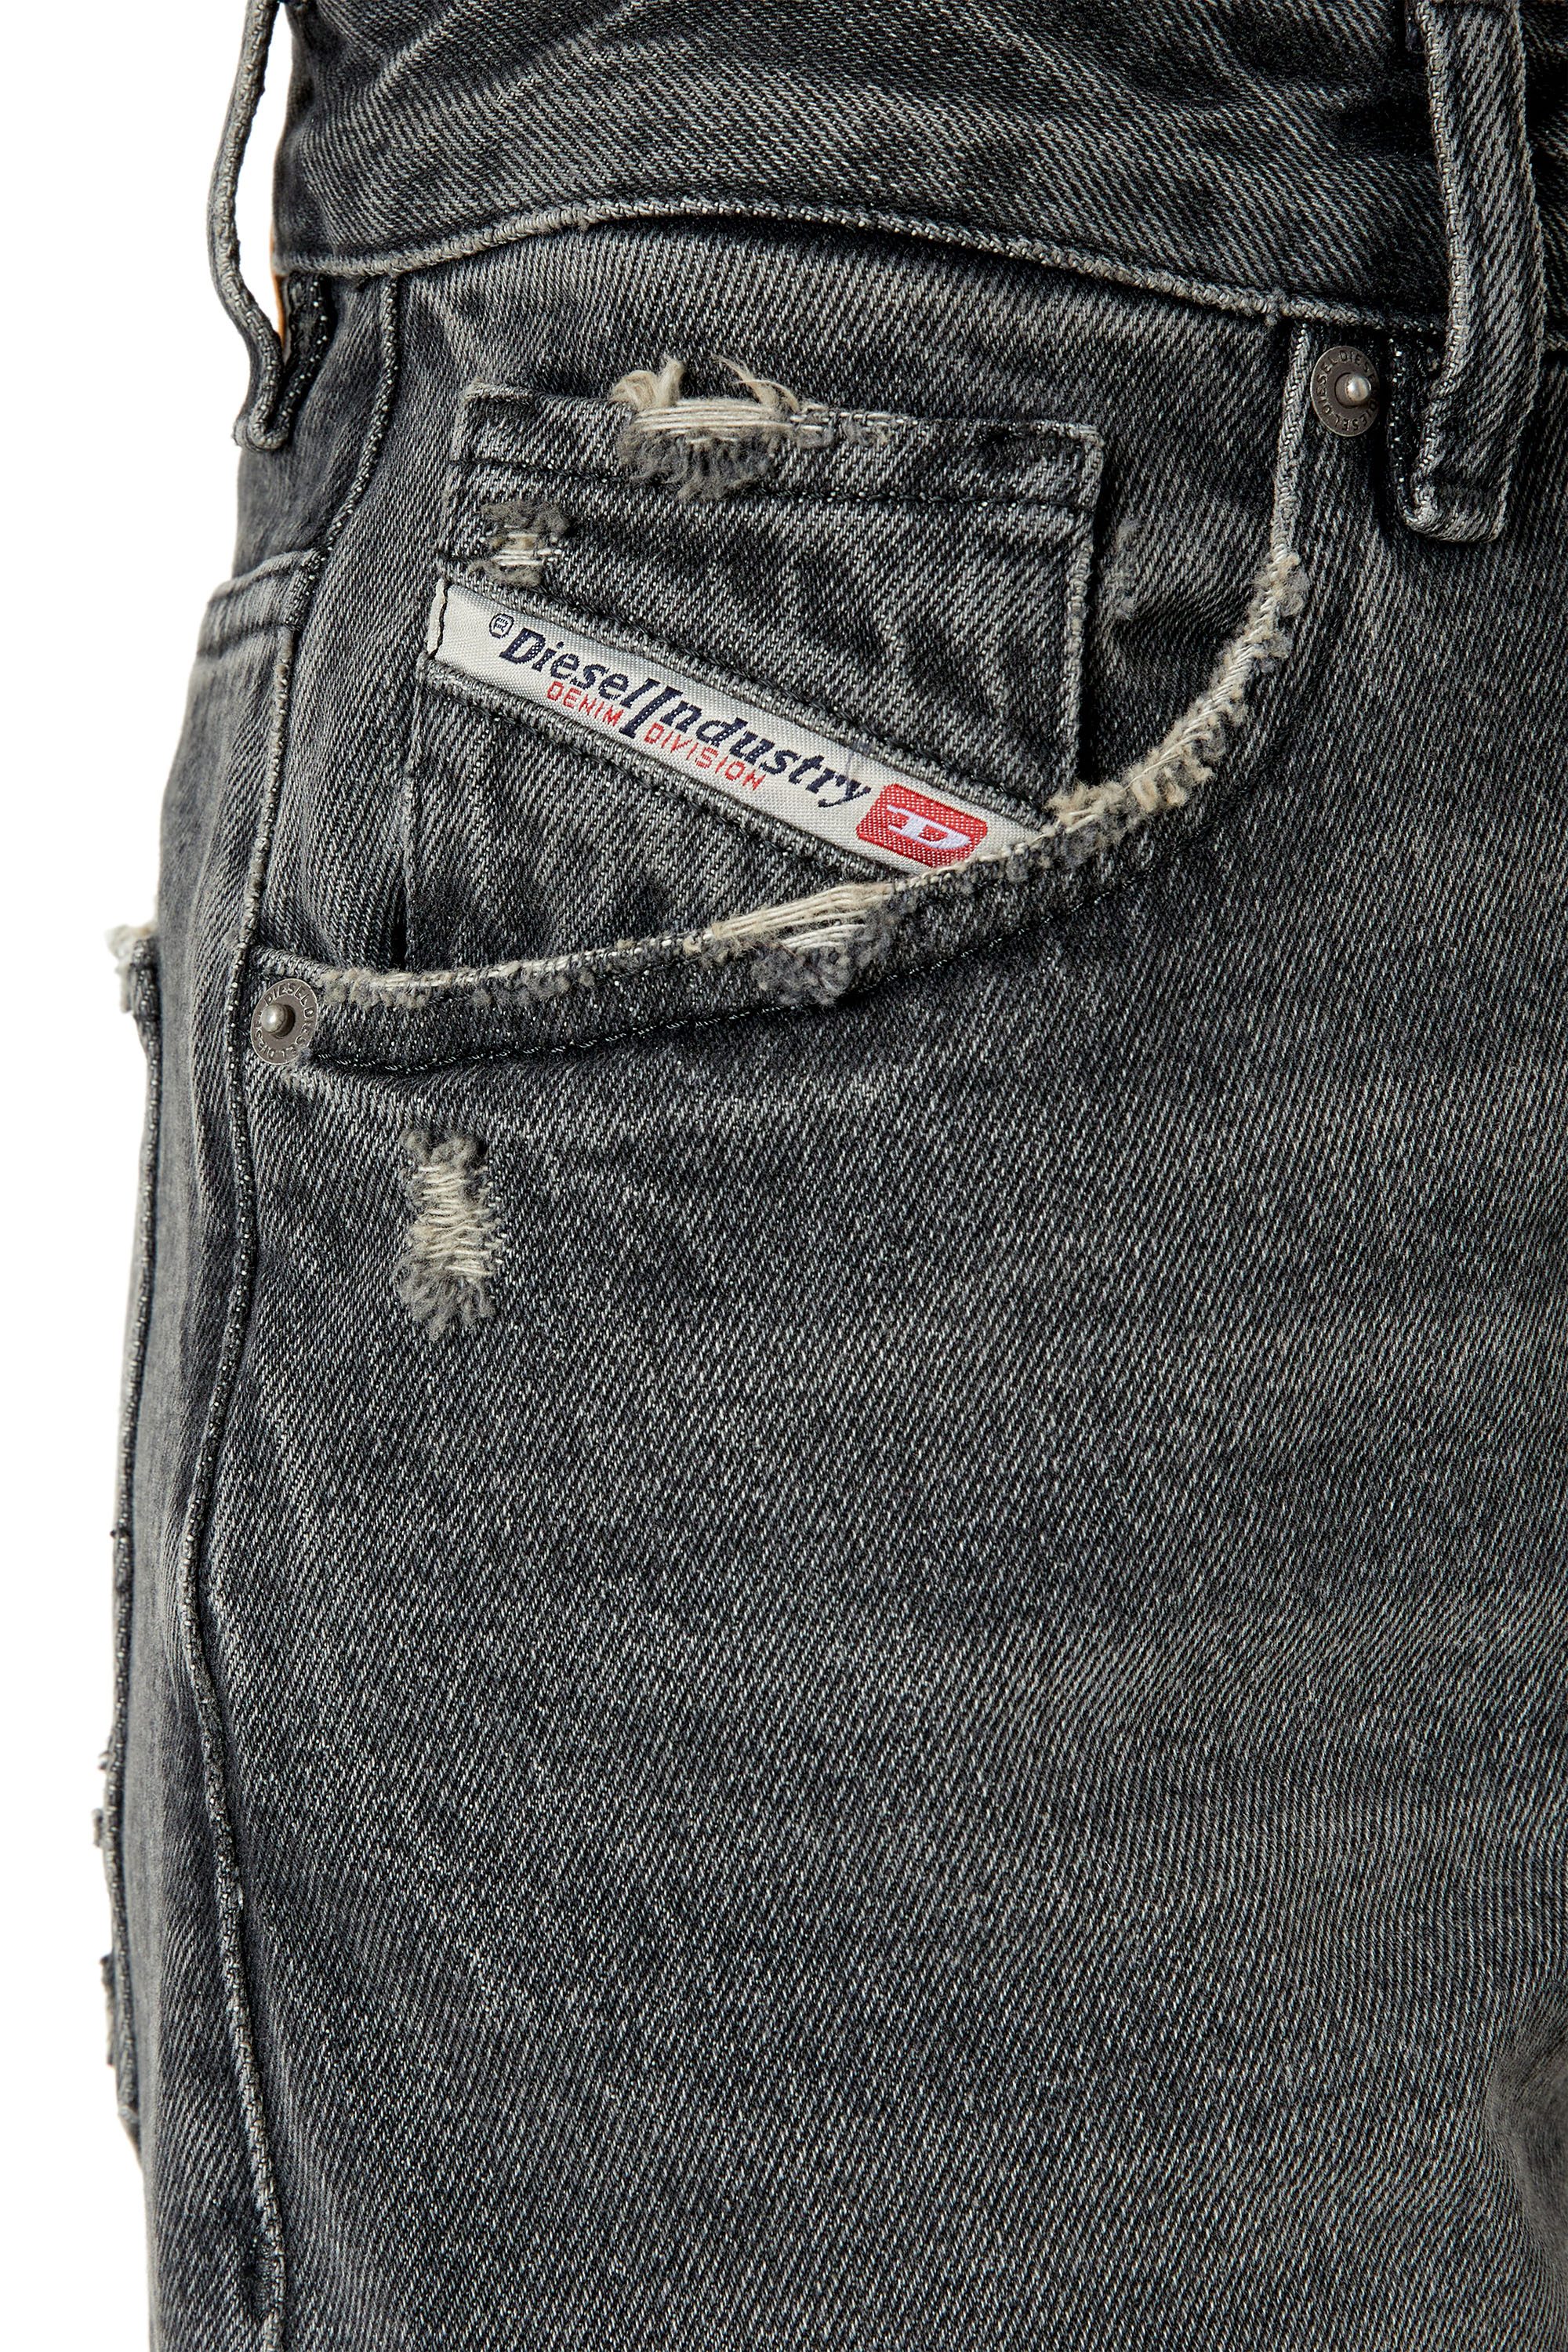 Diesel - Straight Jeans 1999 D-Reggy 007K8, Black/Dark grey - Image 3